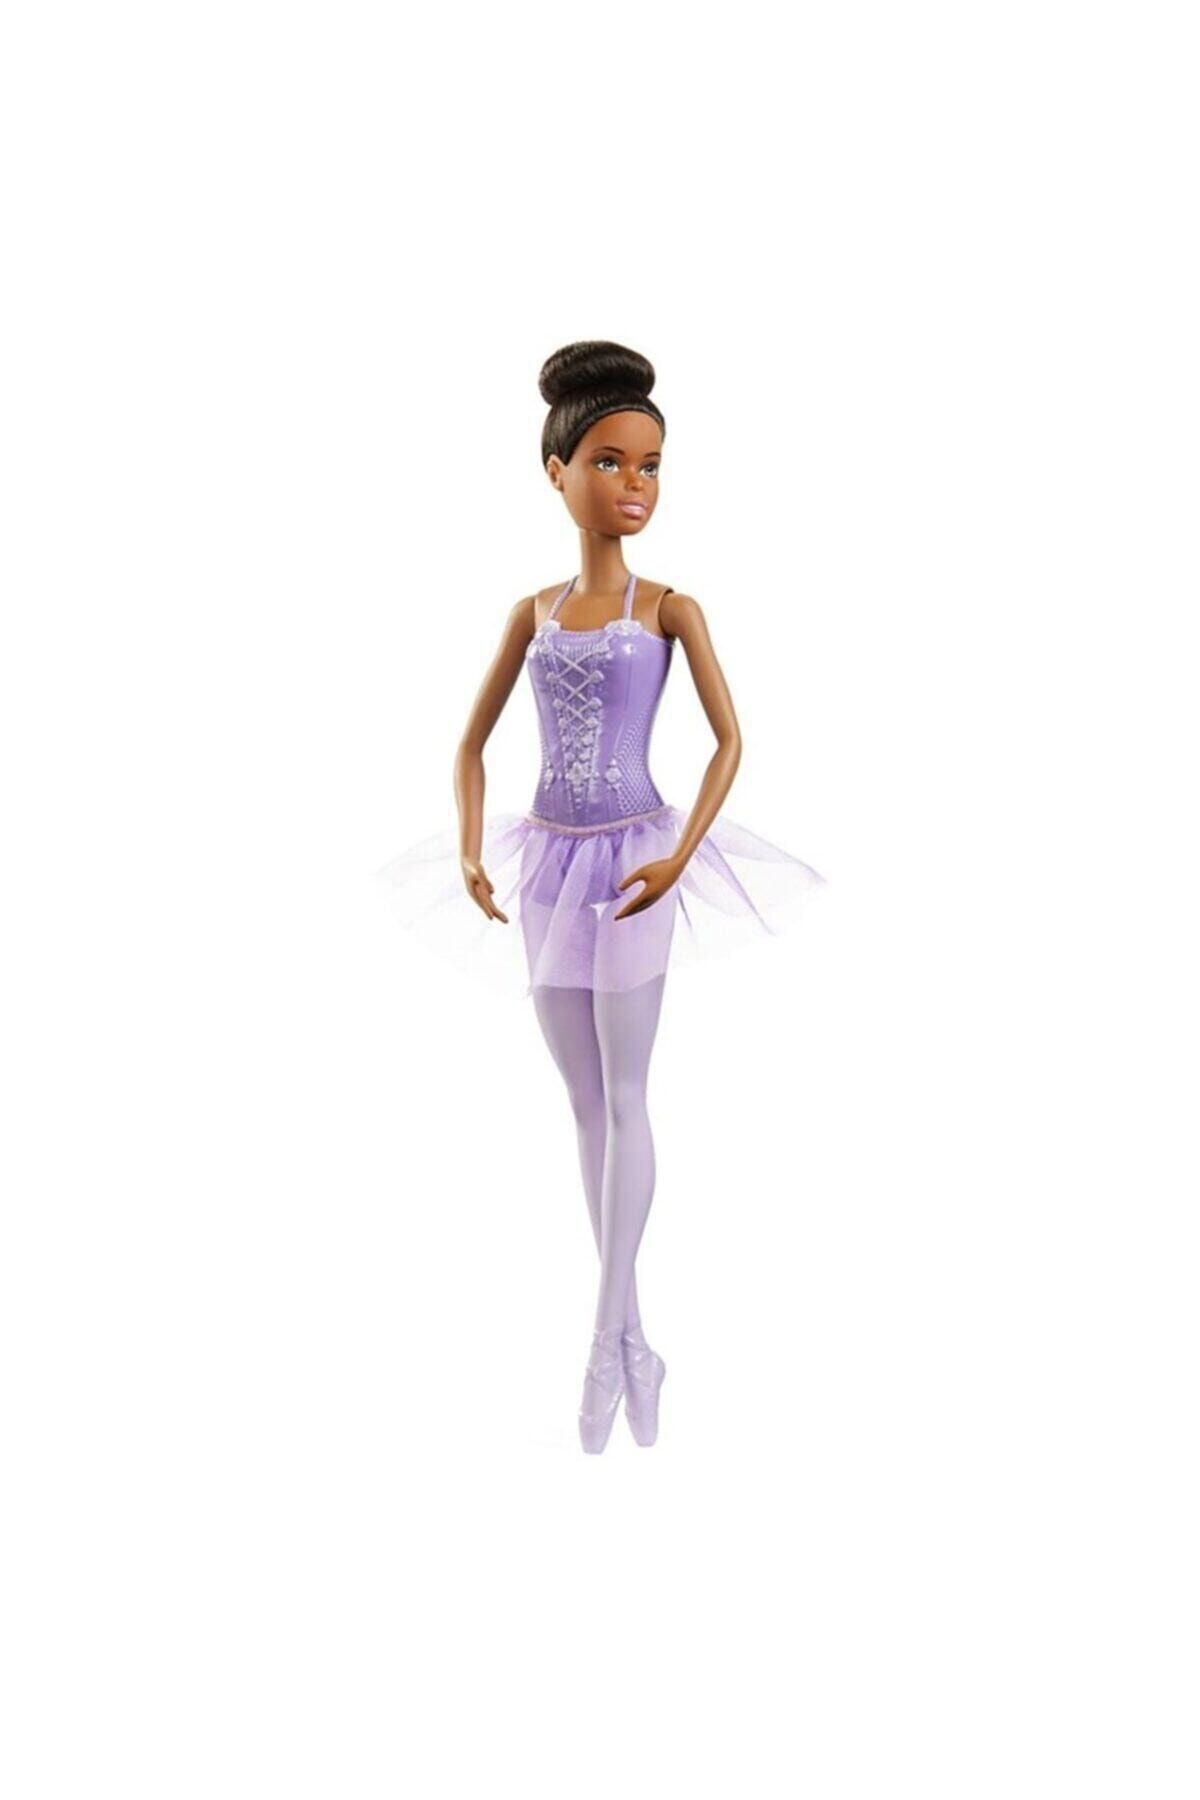 Barbie Balerin Bebek Koyu Tenli Gjl58 - Gjl61 Lisanslı Ürün